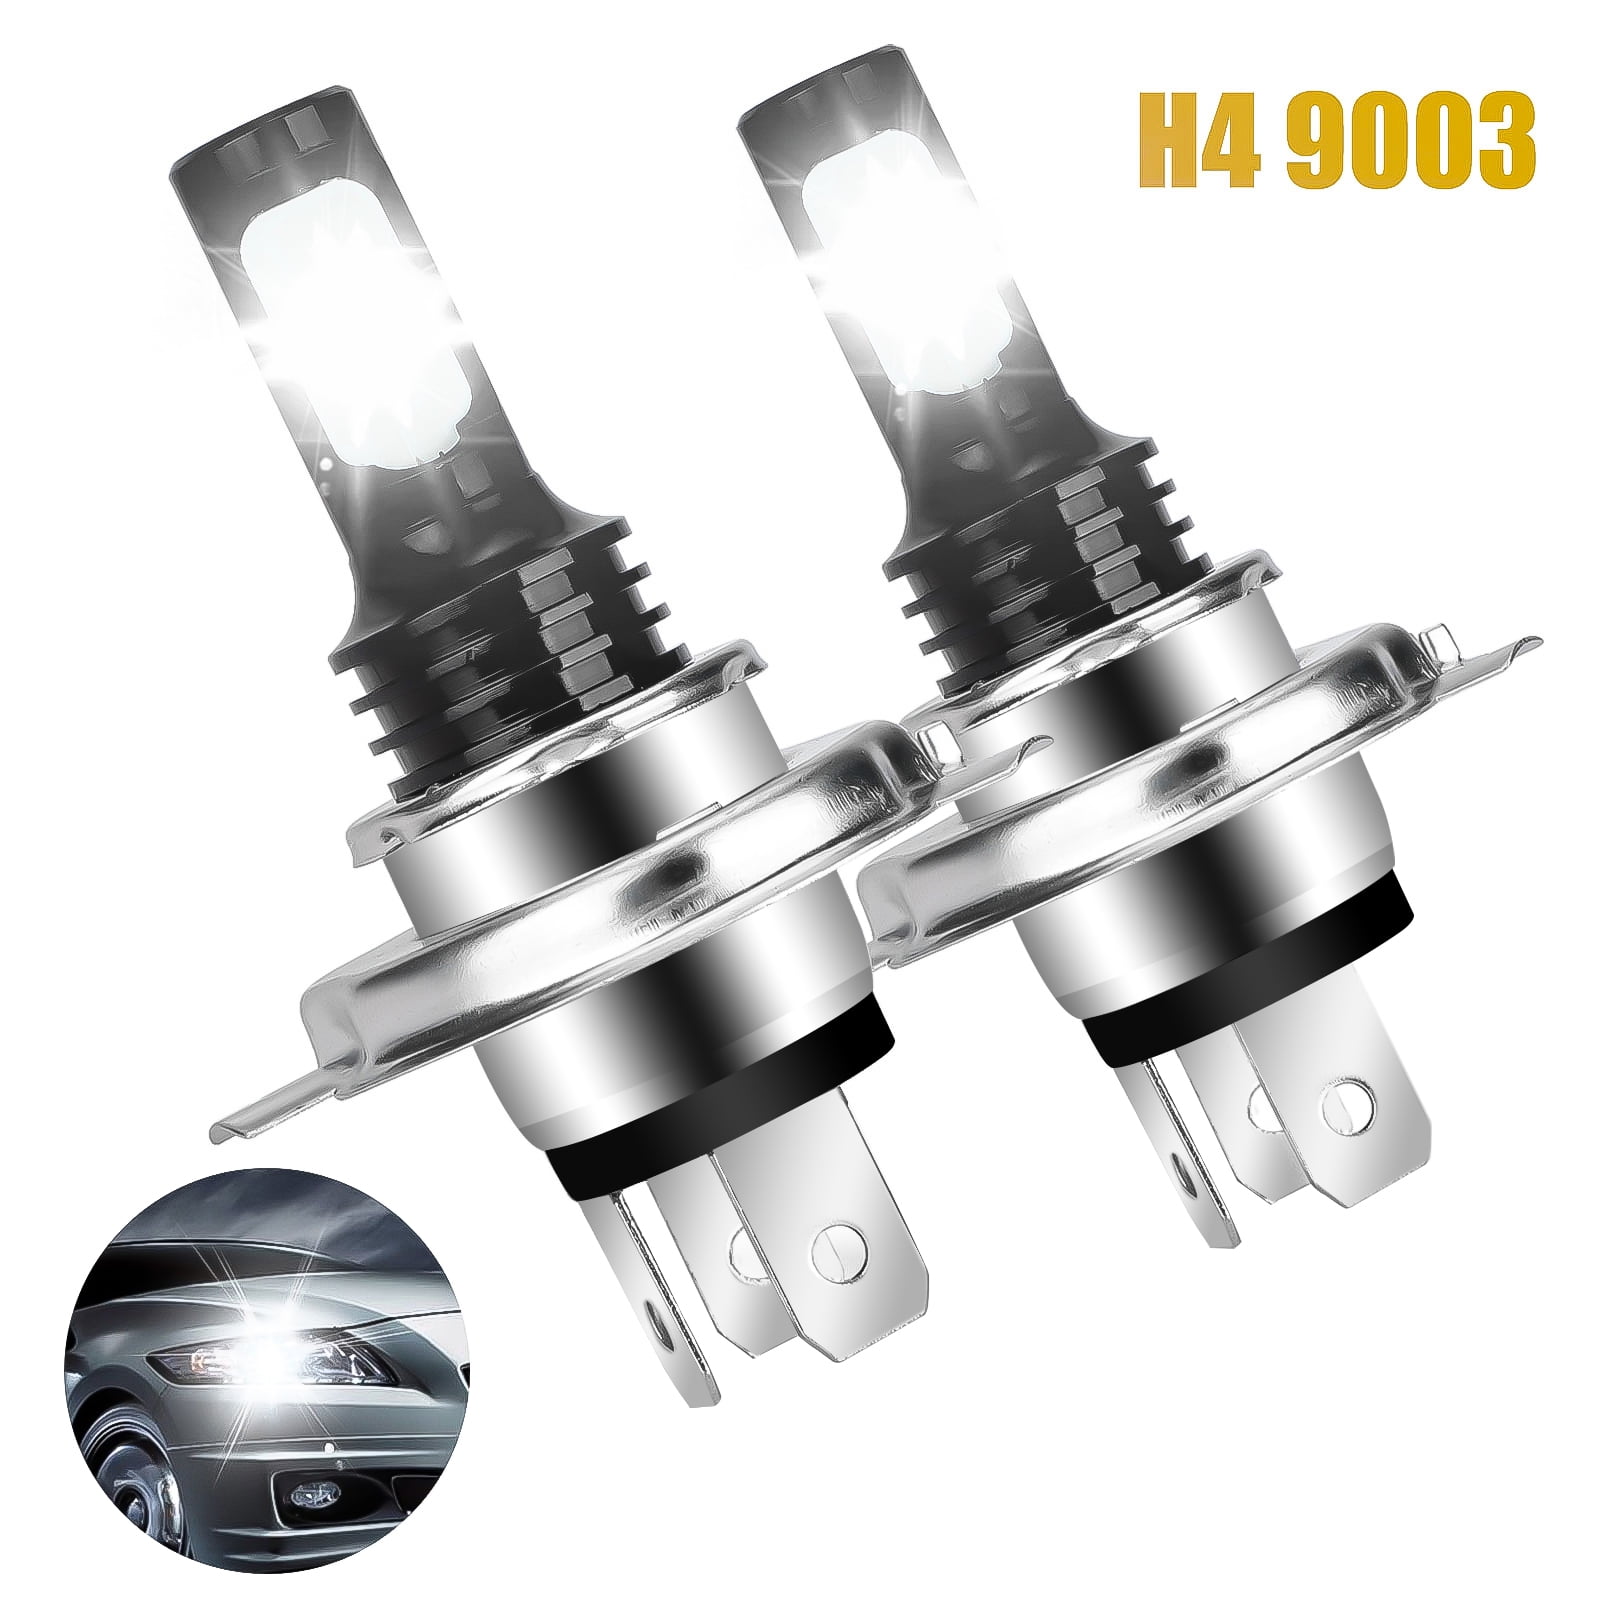 2pcs H4 LED Light Bulbs, TSV H4 9003 LED Headlight Bulb, 14000LM Extremely  Bright 9003 Hi/Lo 360° Beam Bulb, 1:1 Halogen Design Conversion Kit,  Universal for 12V Vehicles, 6000K White 